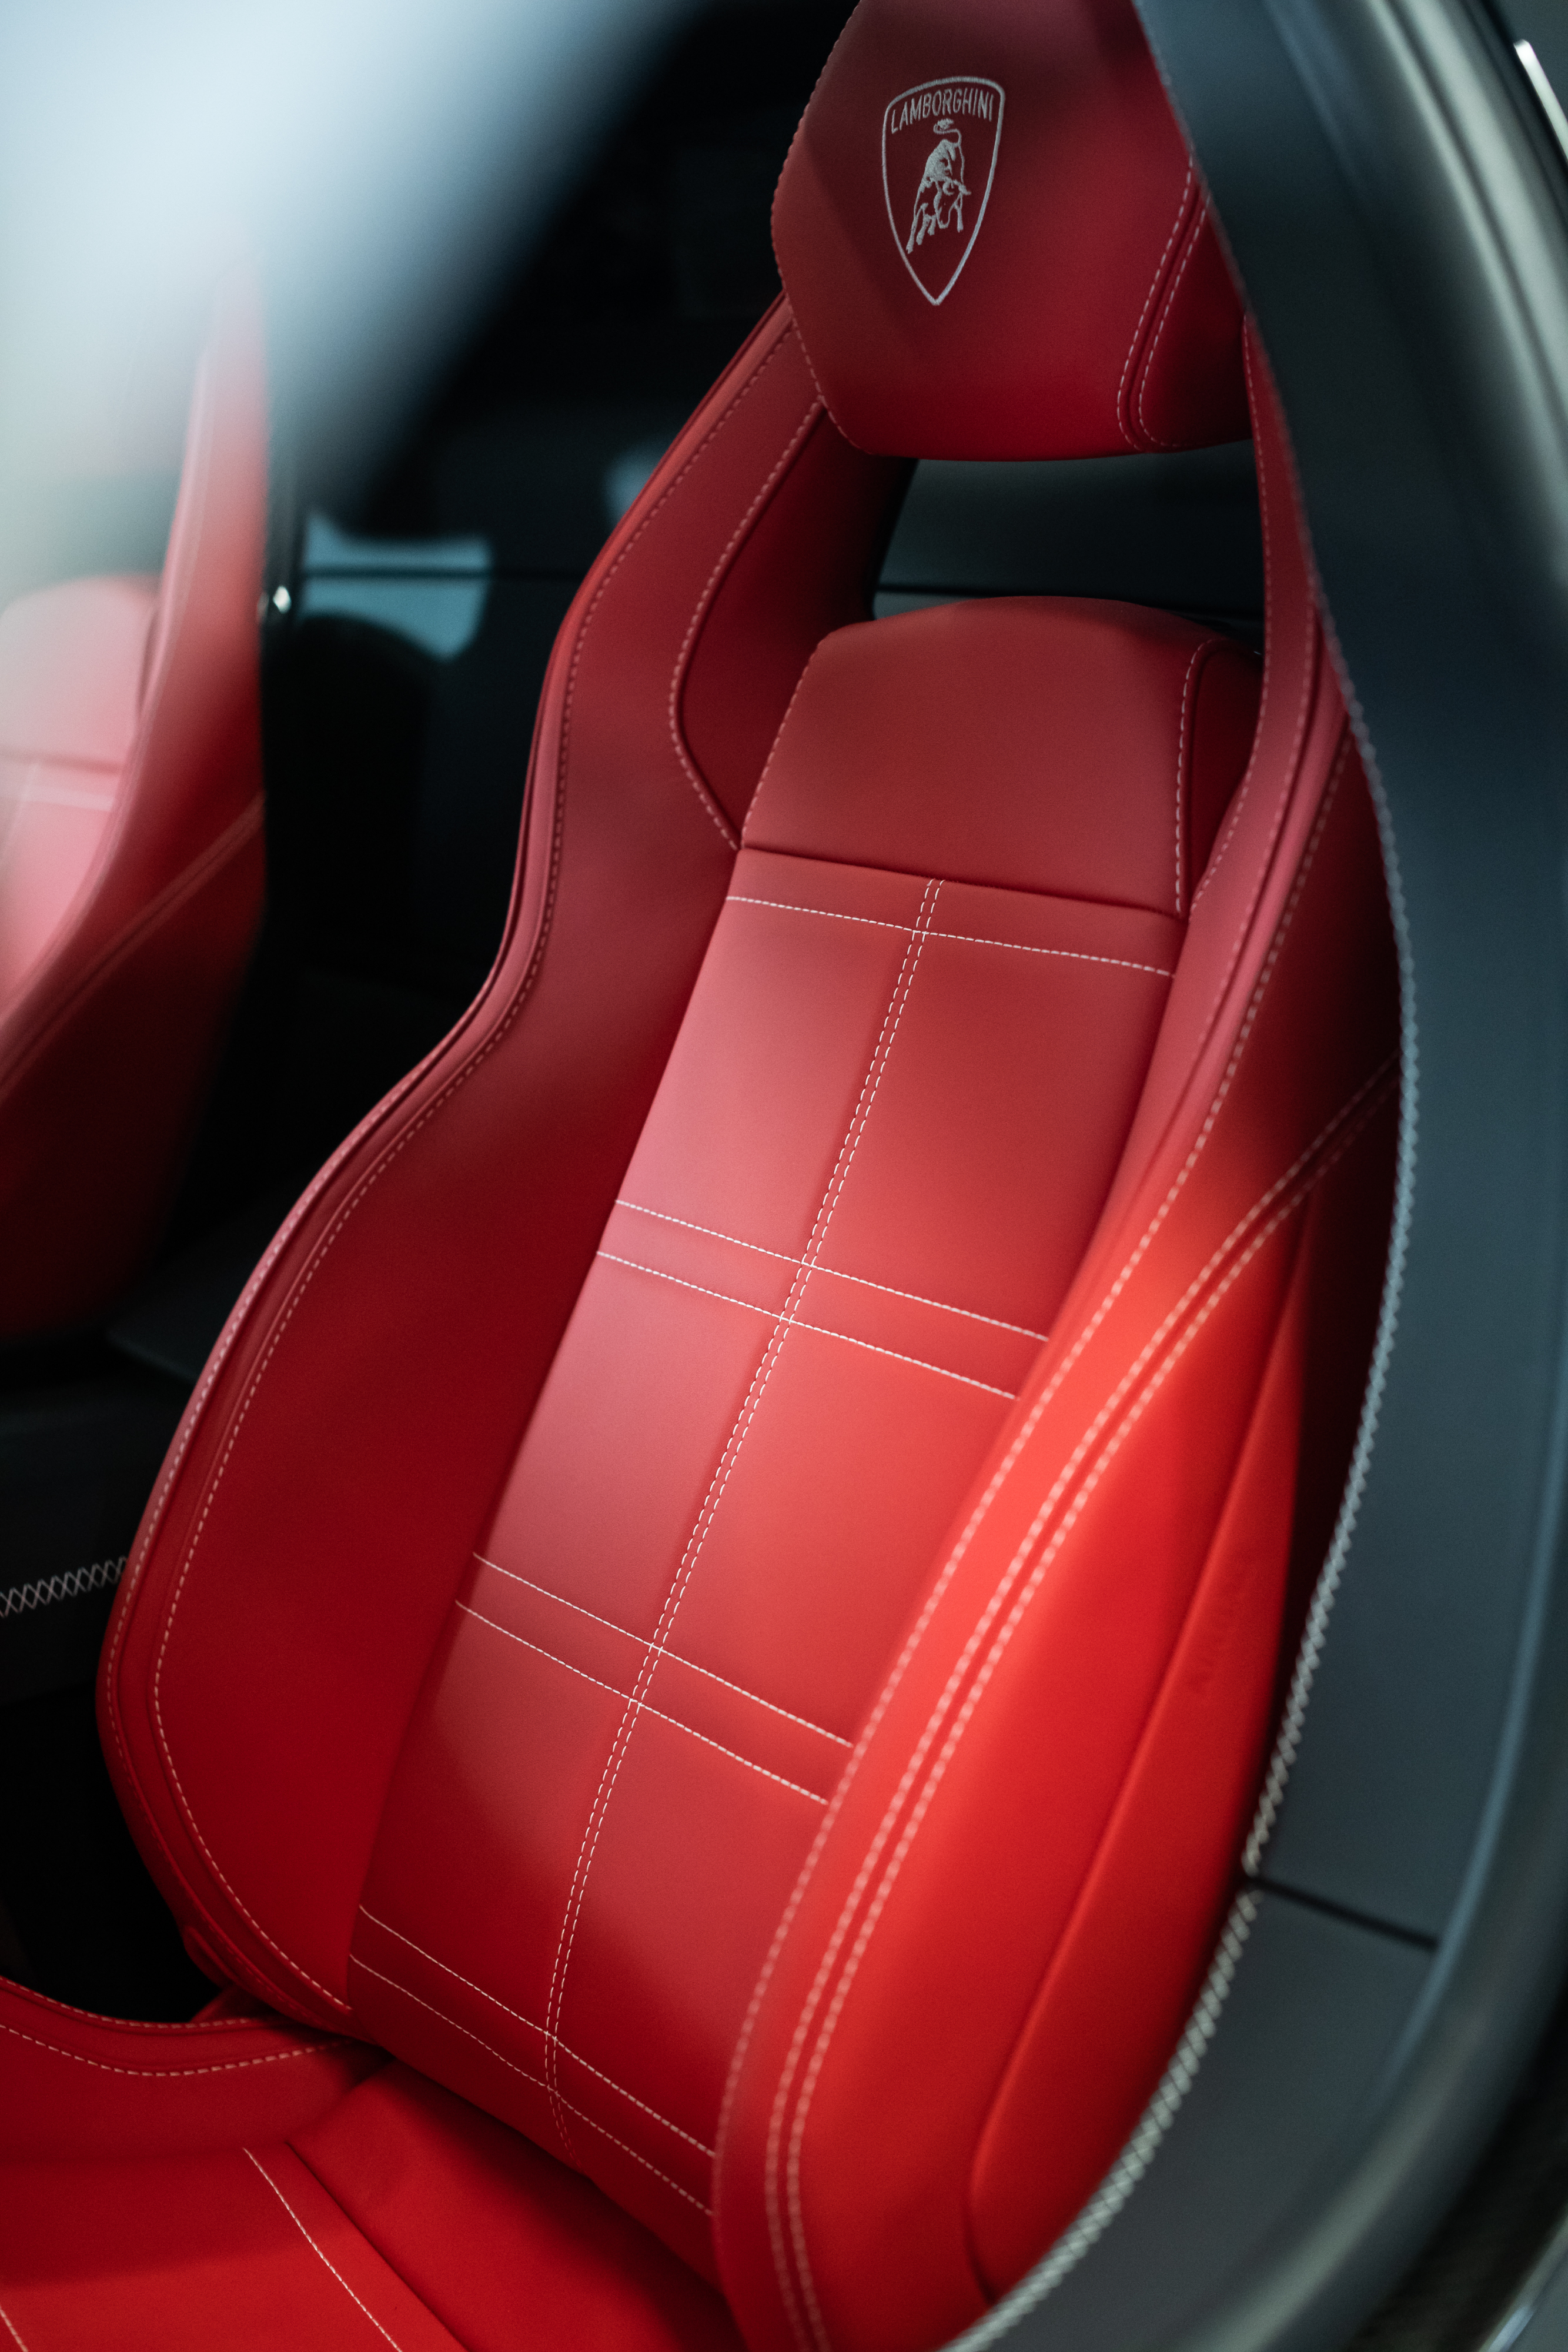 2021 Lamborghini Countach LPI 800-4 seat